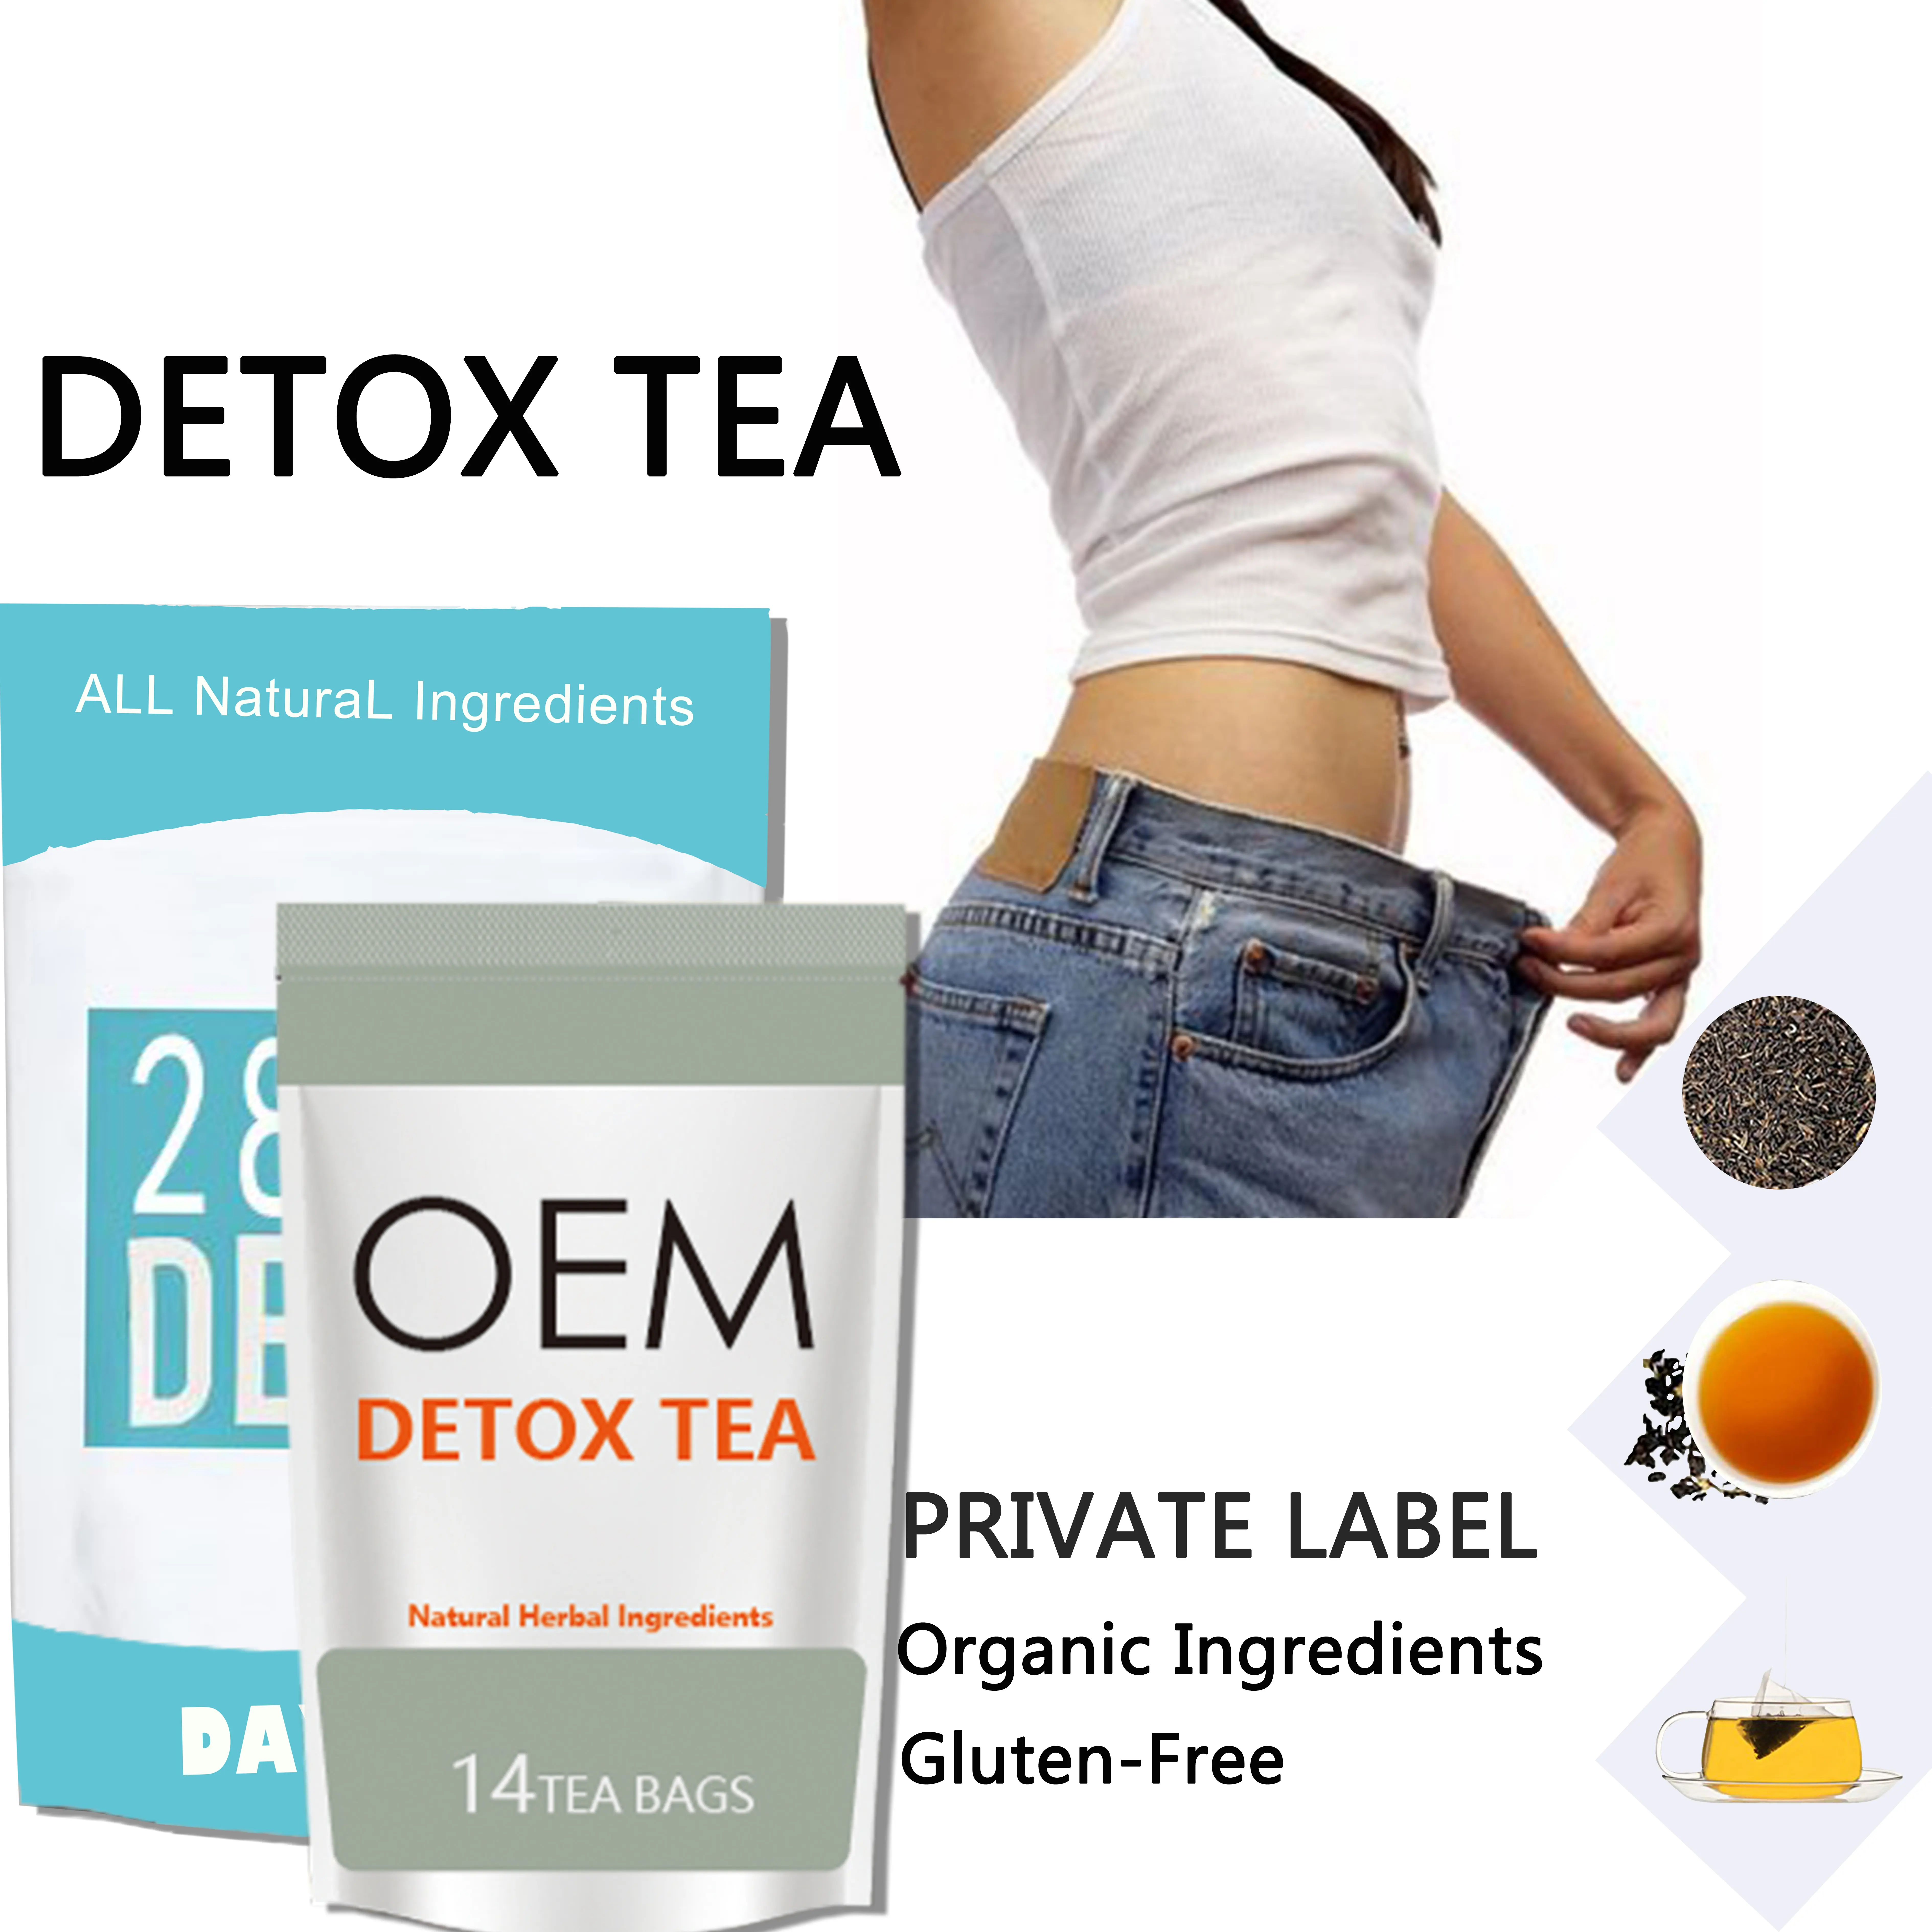 DETOXIFY & LOSE BELLY FAT FAST 28 DaysデトックスSlimming茶100% 自然式デトックス茶14日